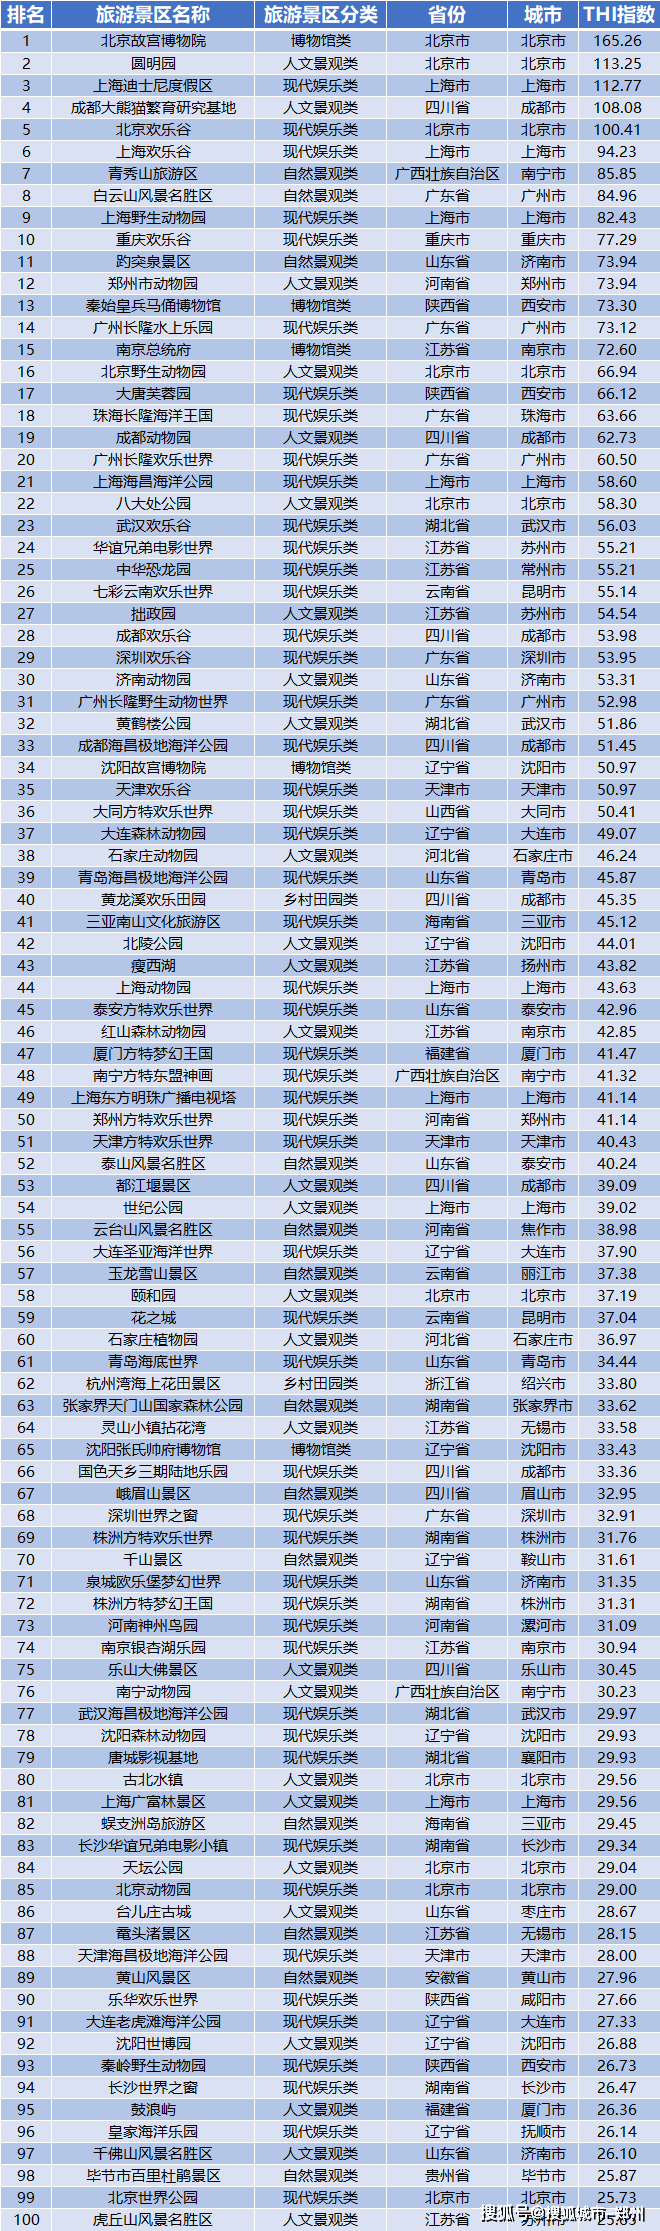 云台山入选中国旅游景区欢乐指数top100榜单!